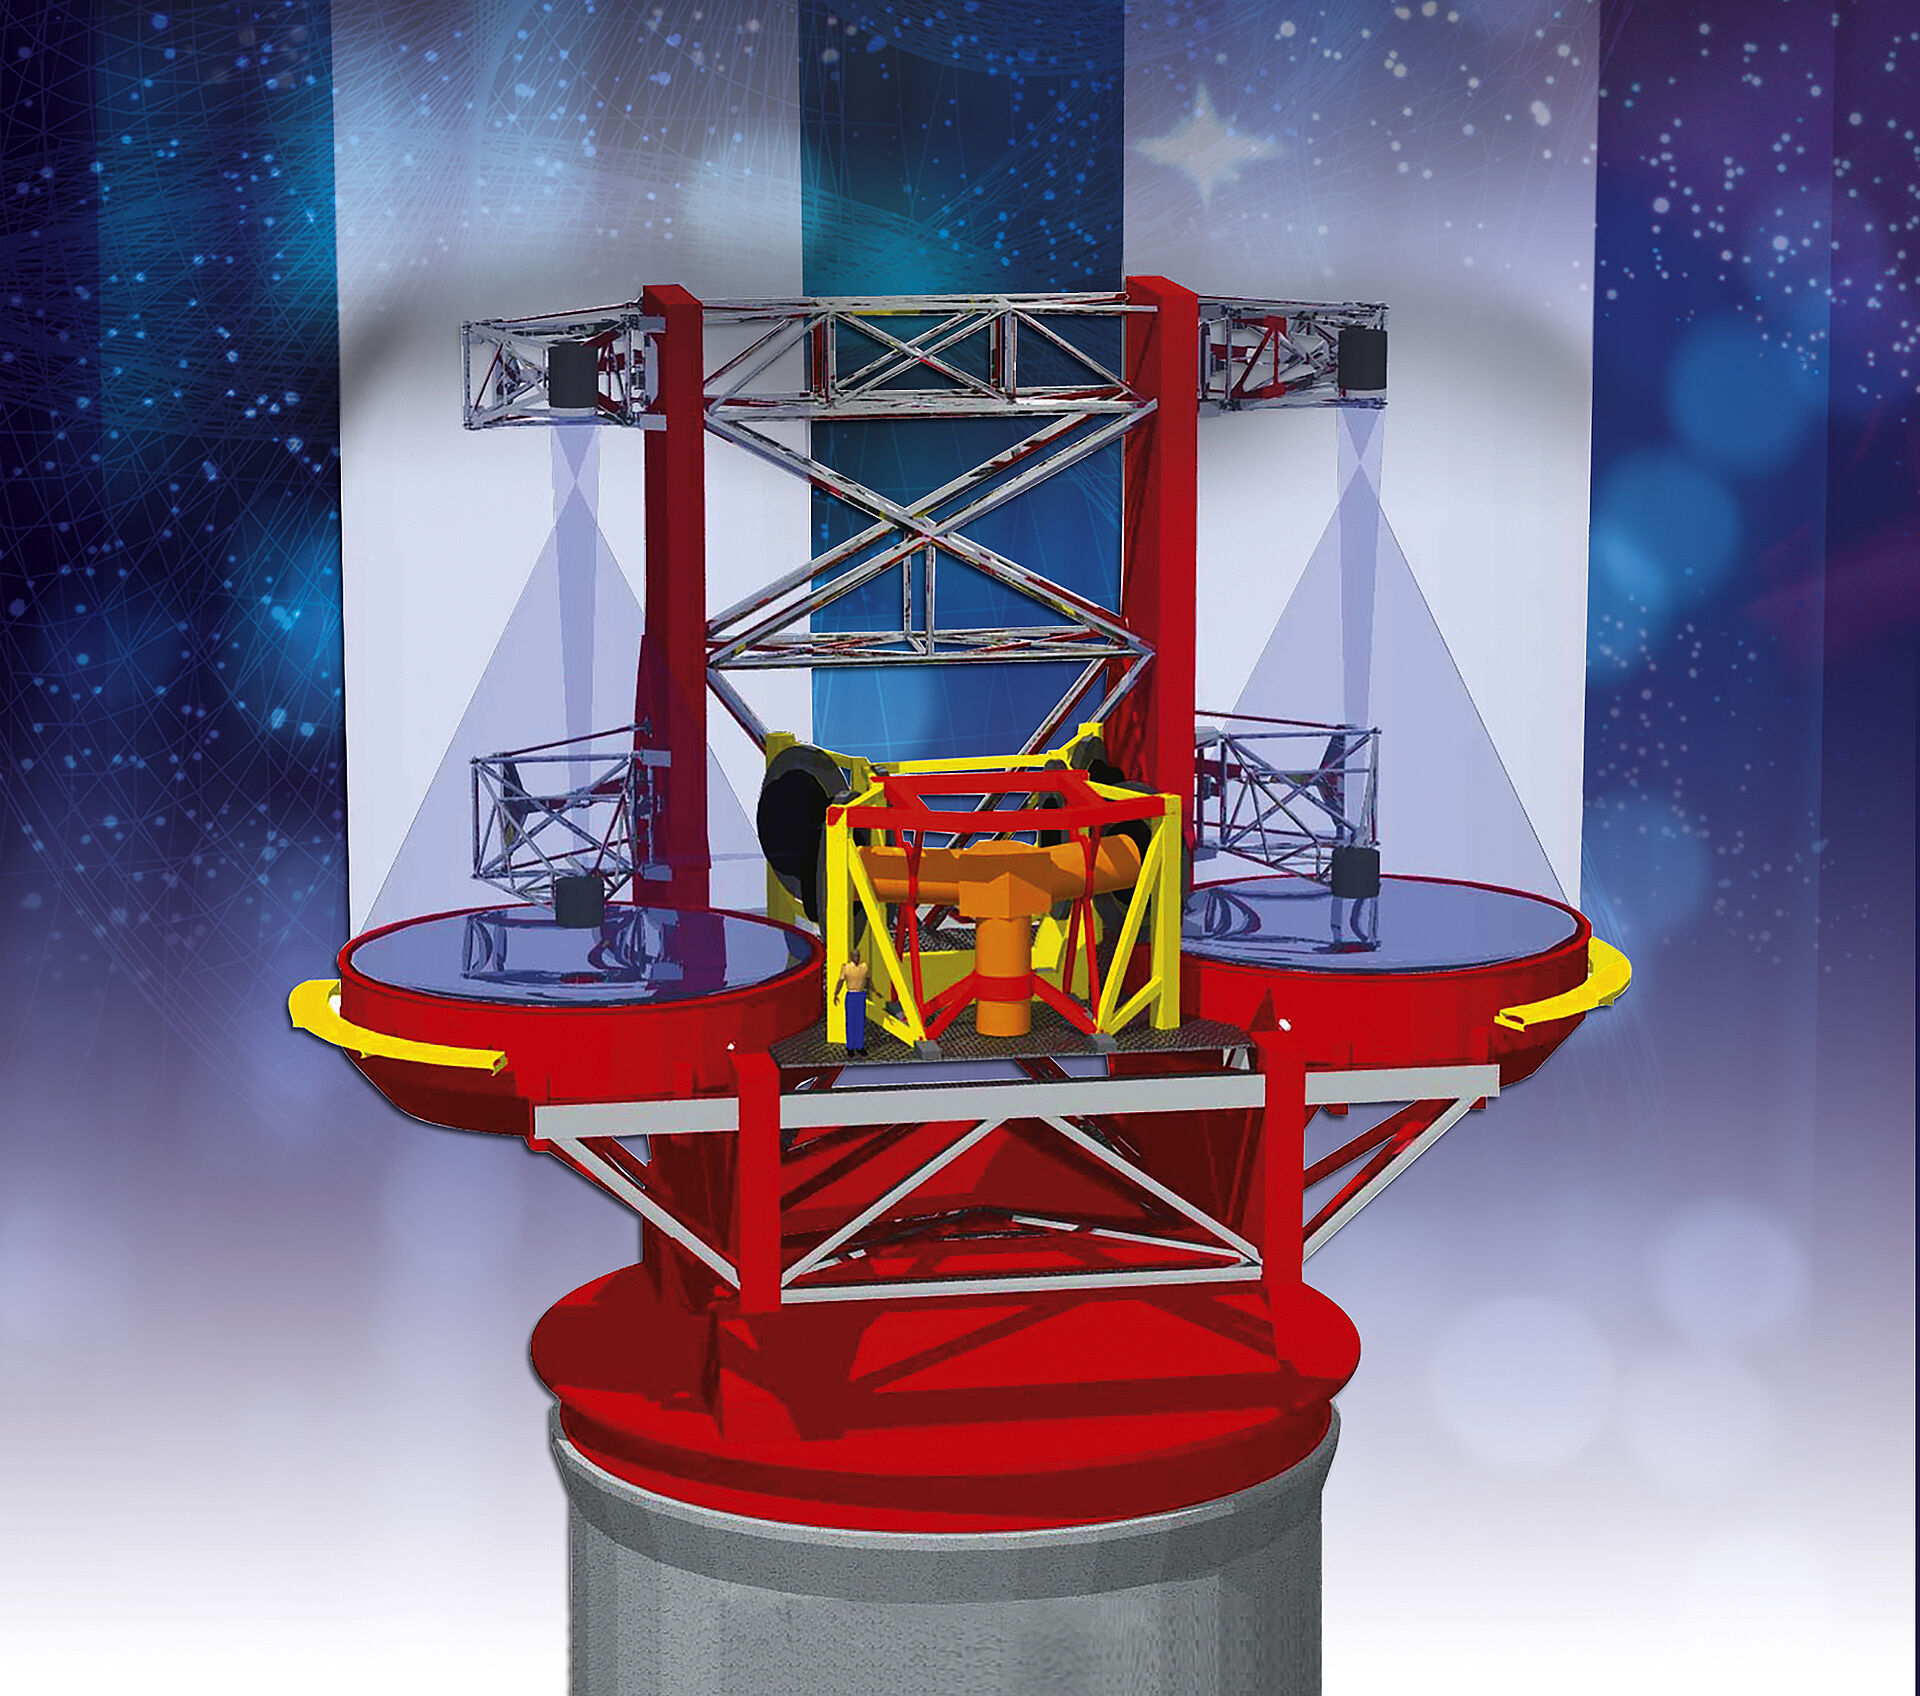 LBT (Large Binocular Telescope)